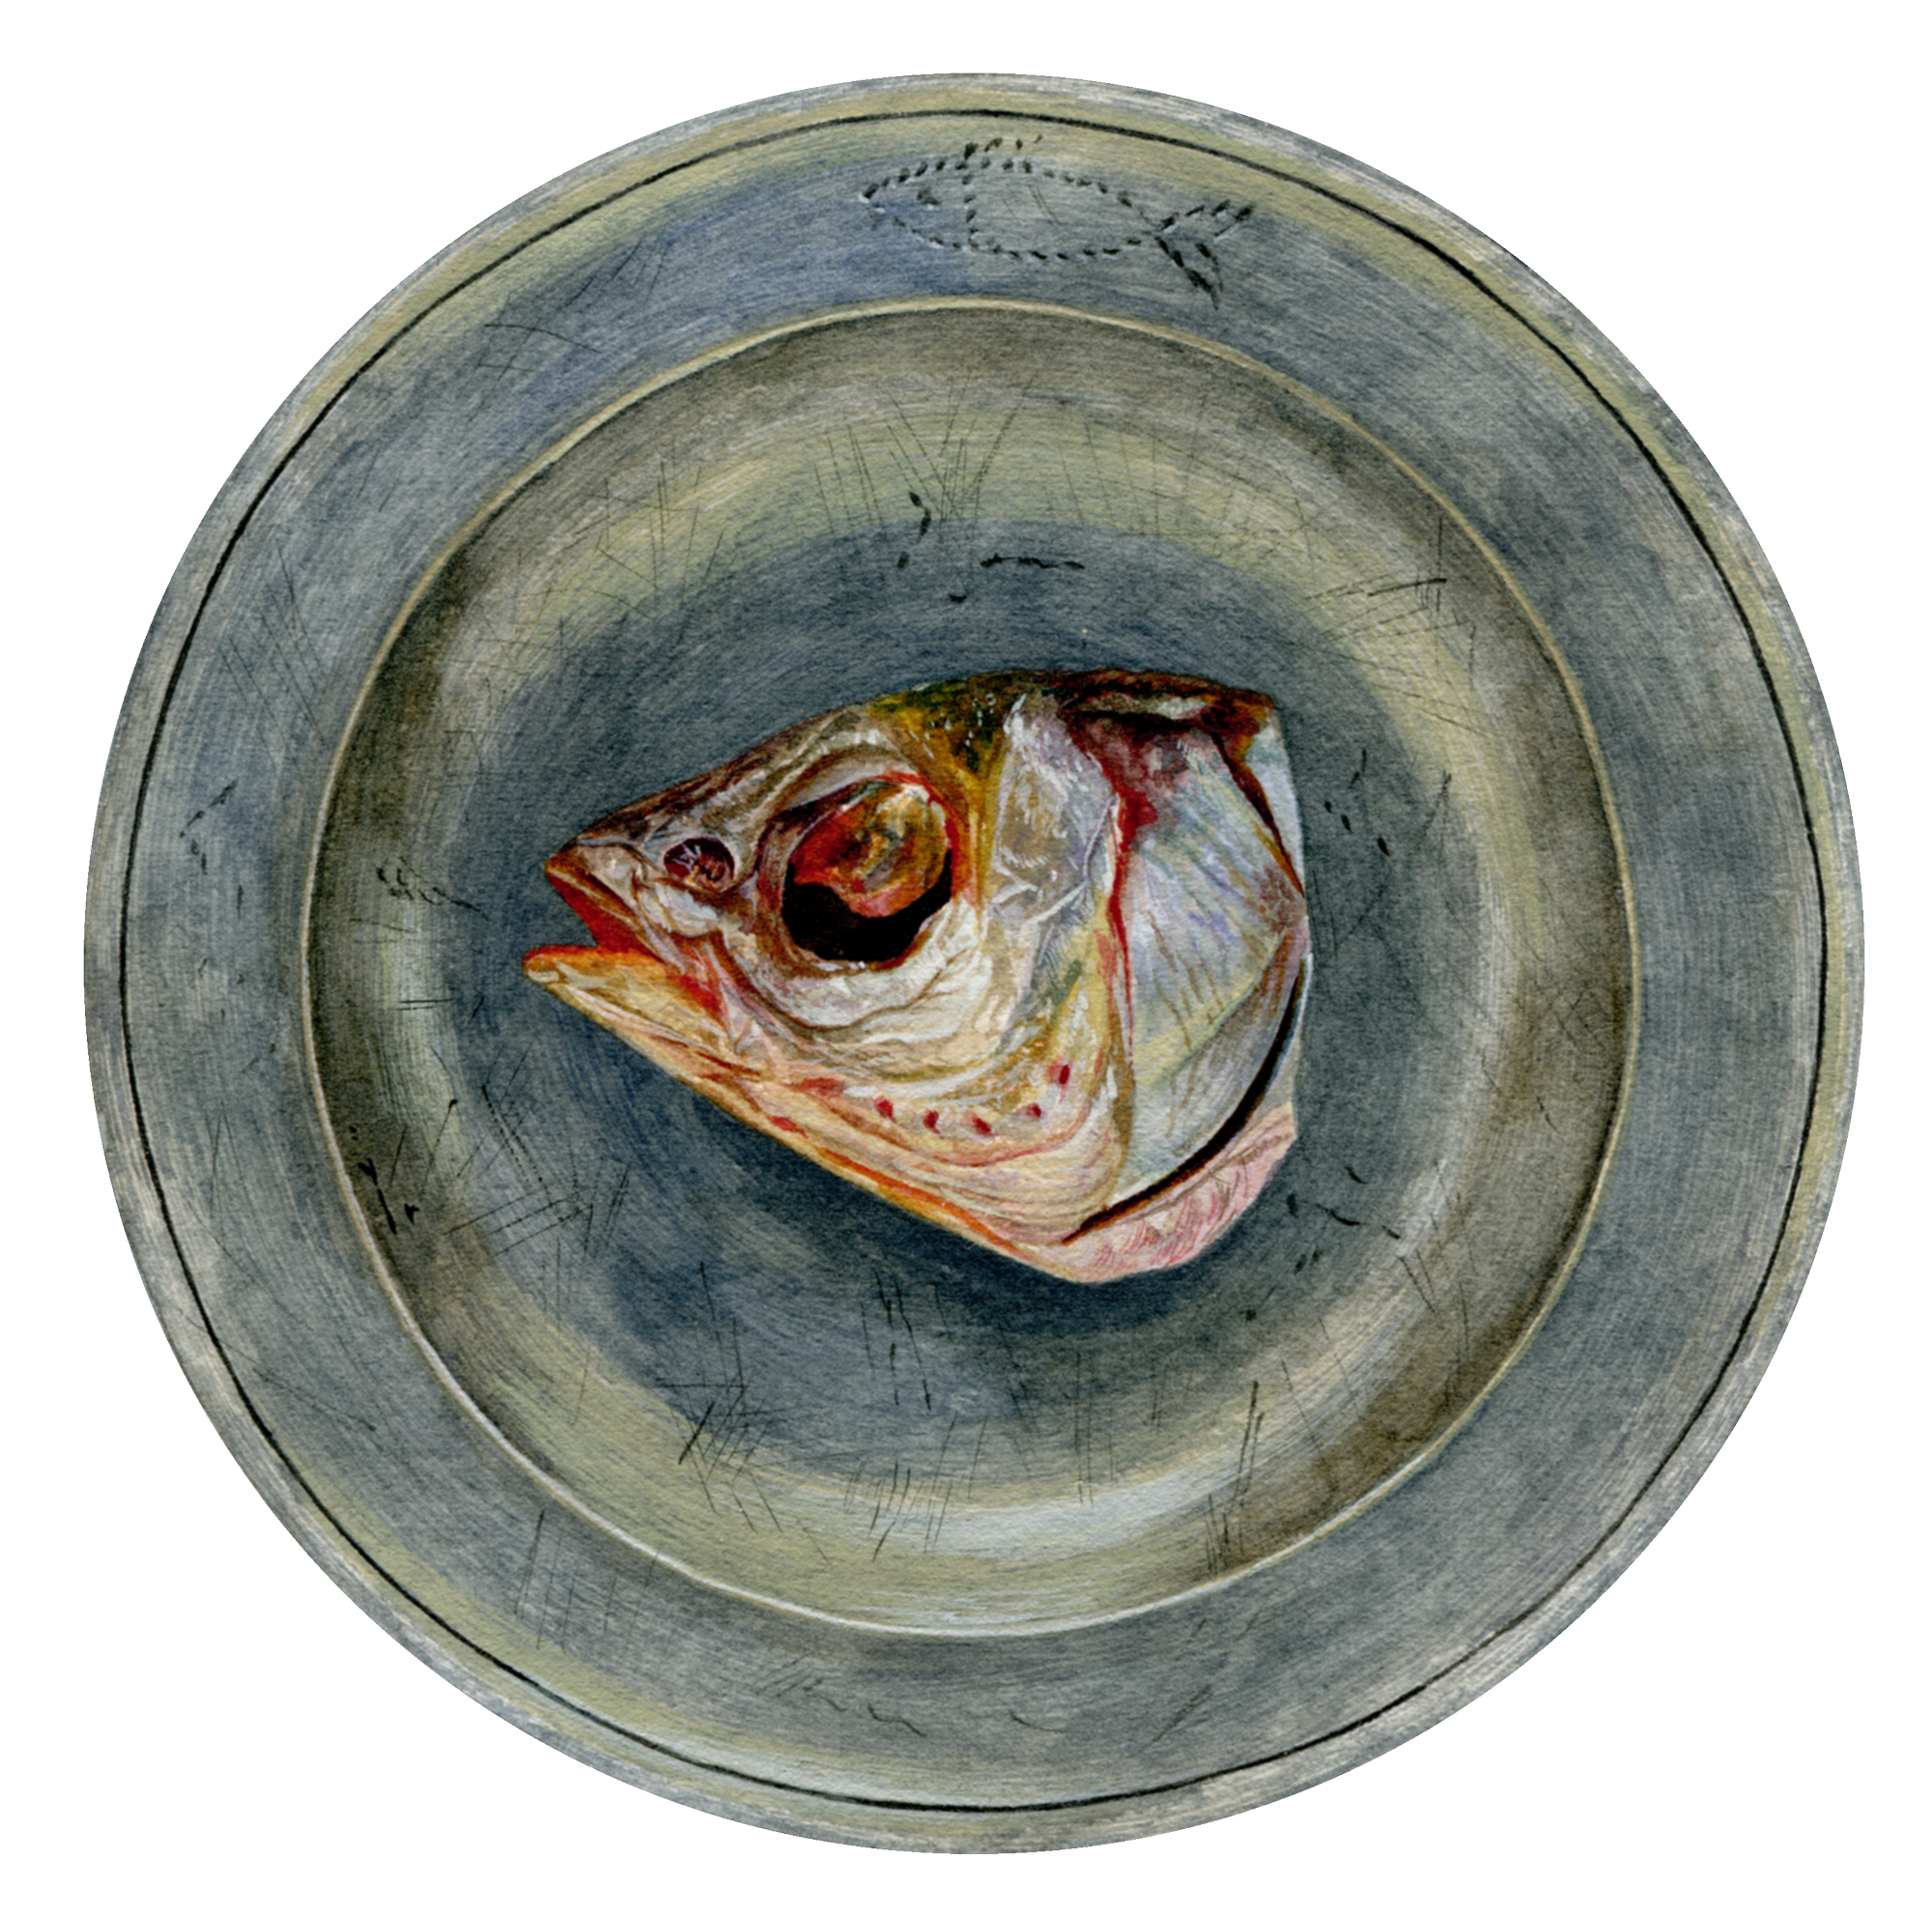 Odcięta, zakrwawiona głowa ryby na talerzyku